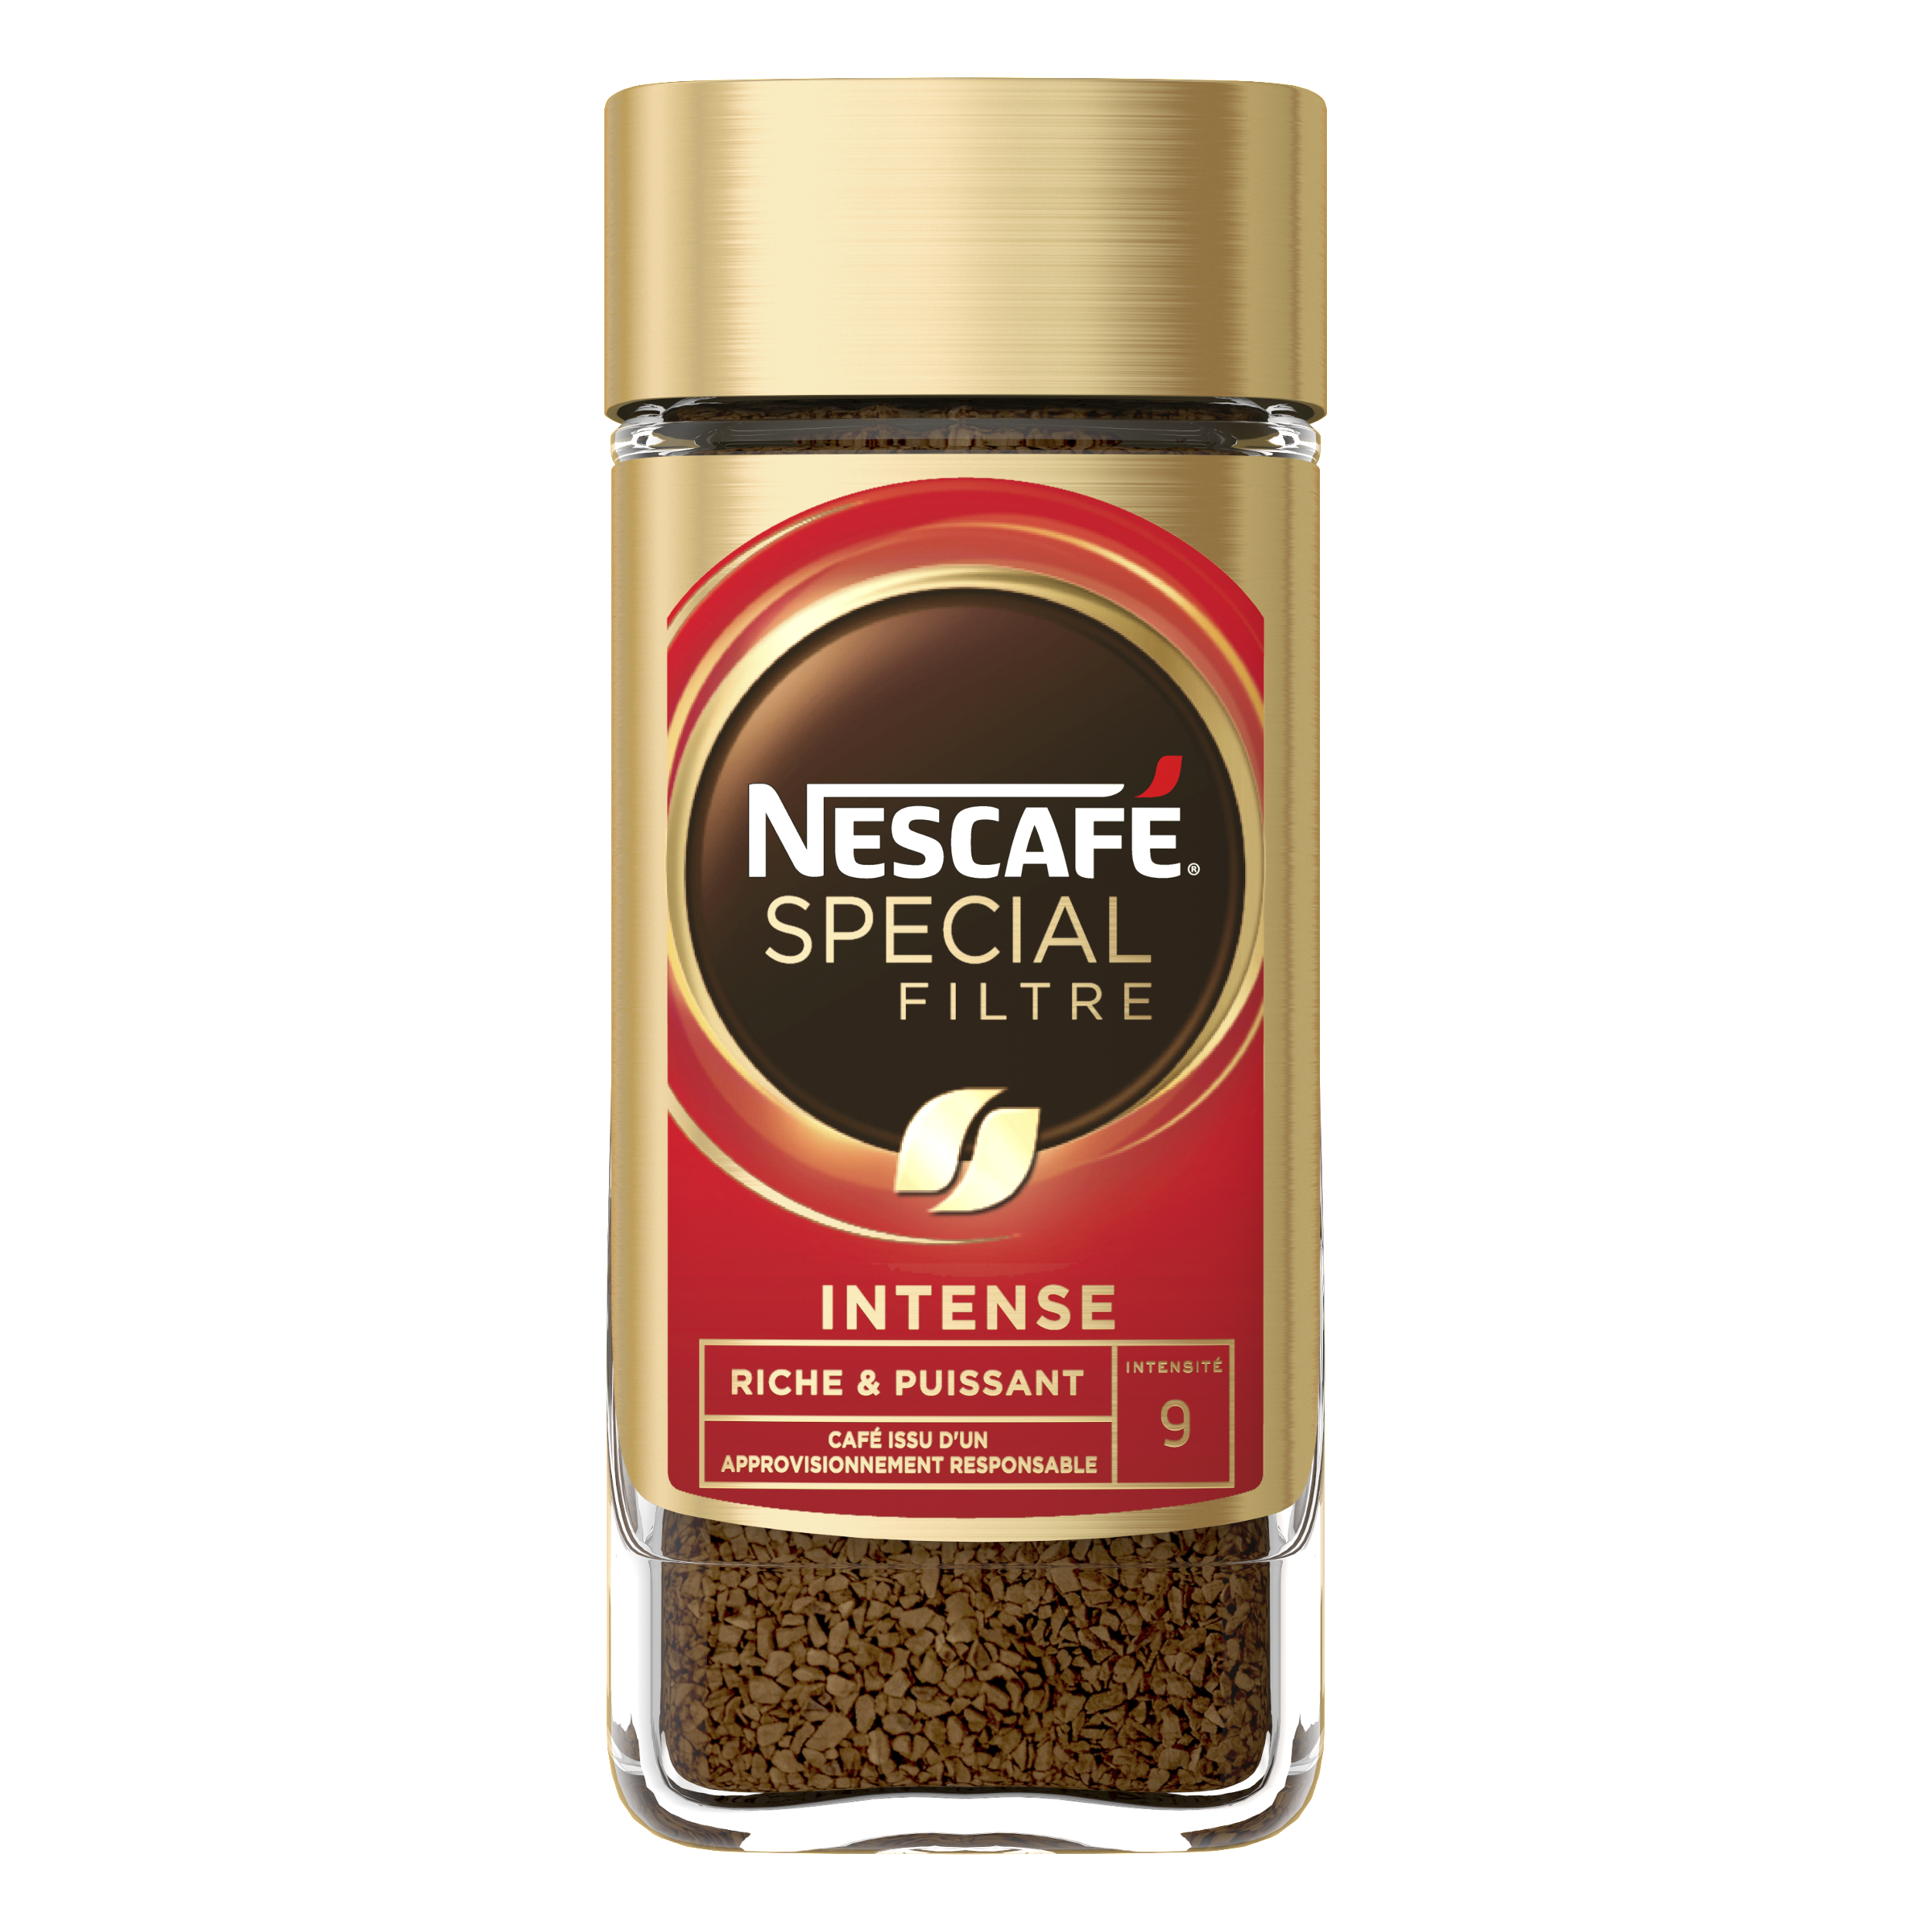 Nescafé Spécial Filtre Intense pack